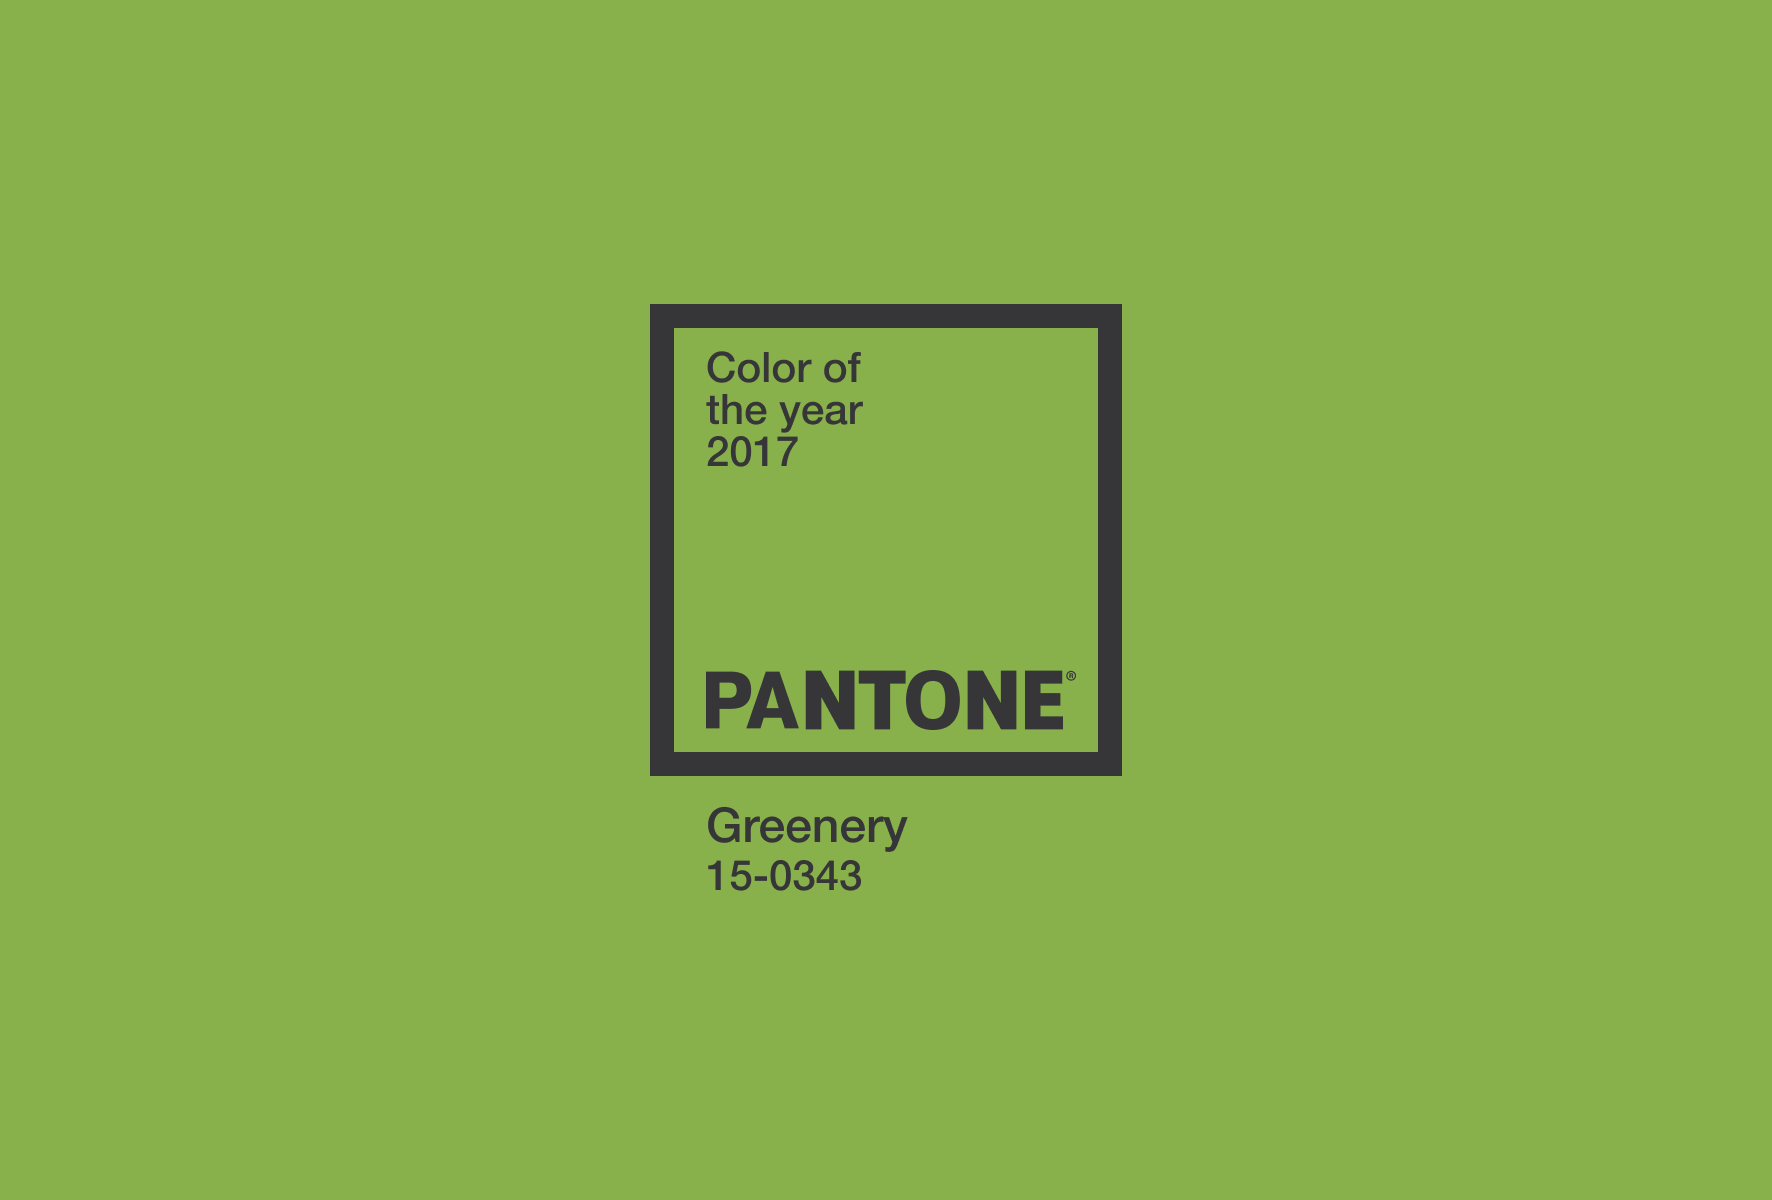 Pantone aasta värv 2017 – Greenery